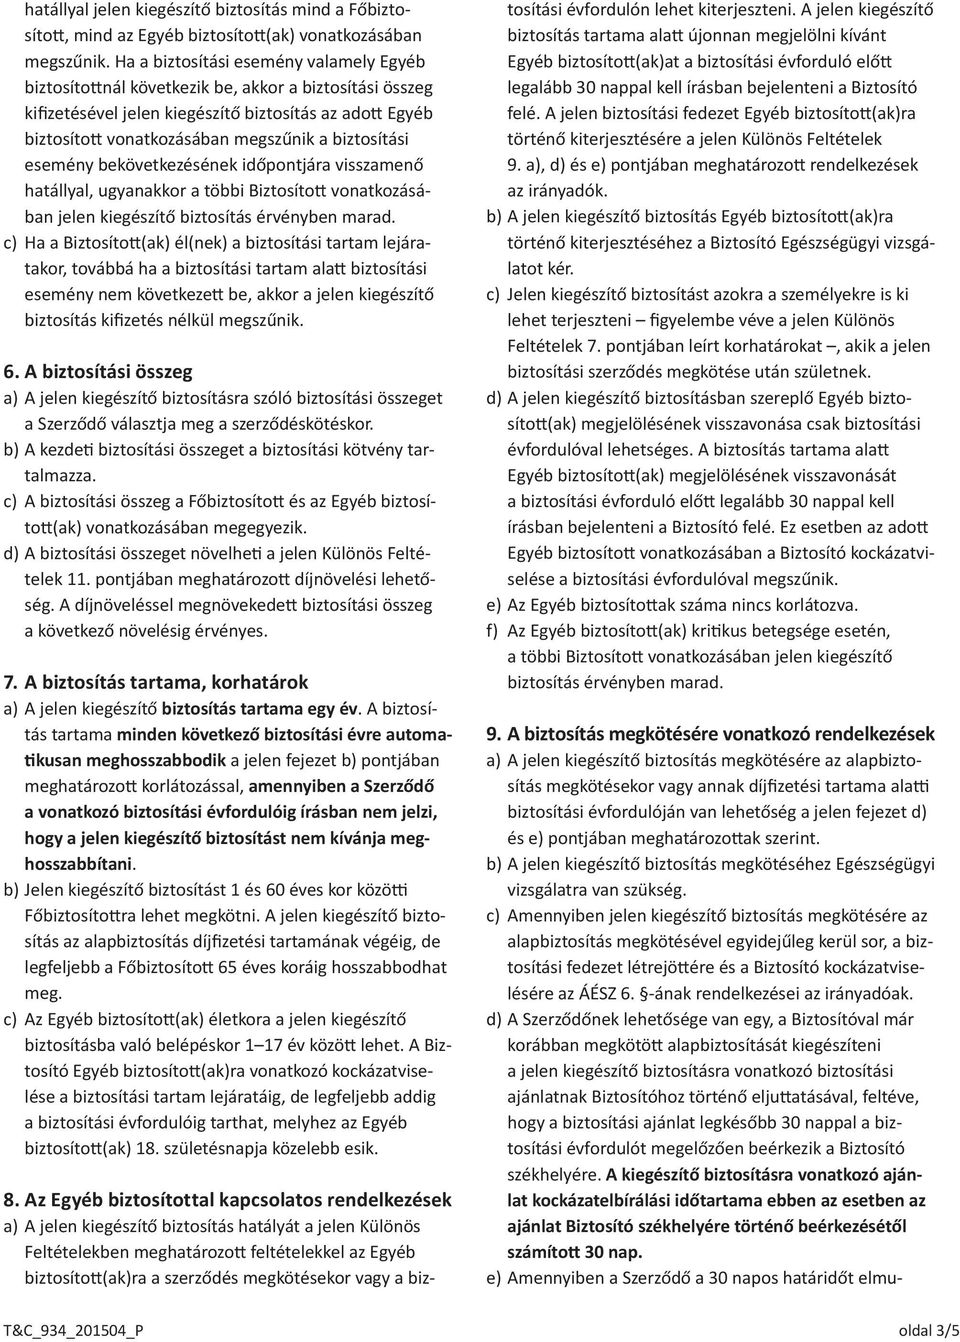 Az NN Biztosító Zrt. 934 jelű Kritikus betegségekre szóló kiegészítő  biztosításának feltételei - PDF Ingyenes letöltés